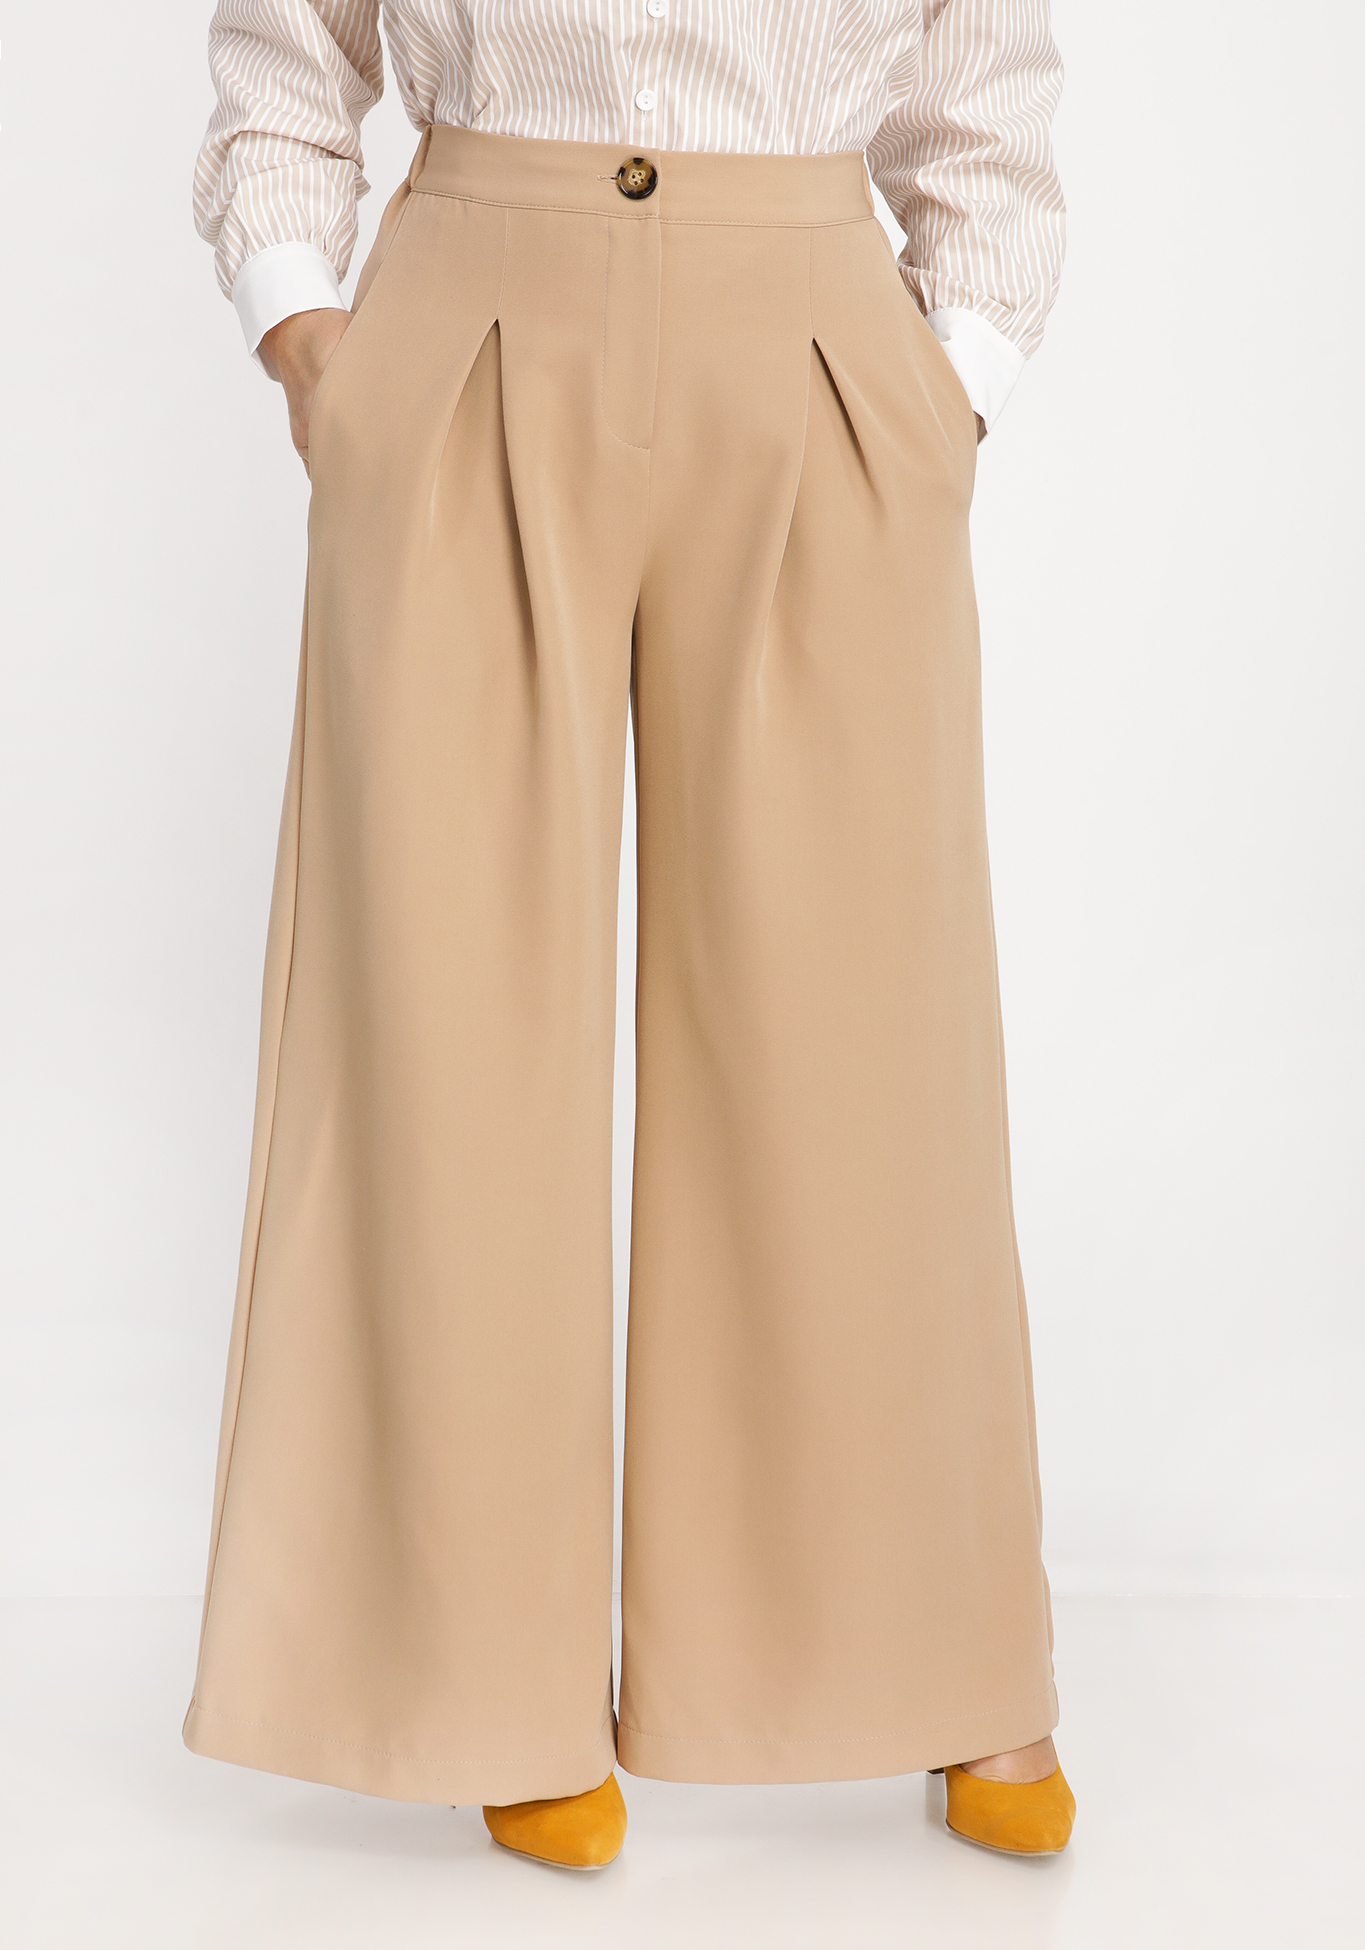 Юбка-брюки со складками SVETLANA VORONTSOVA, размер 54, цвет бежевый - фото 2